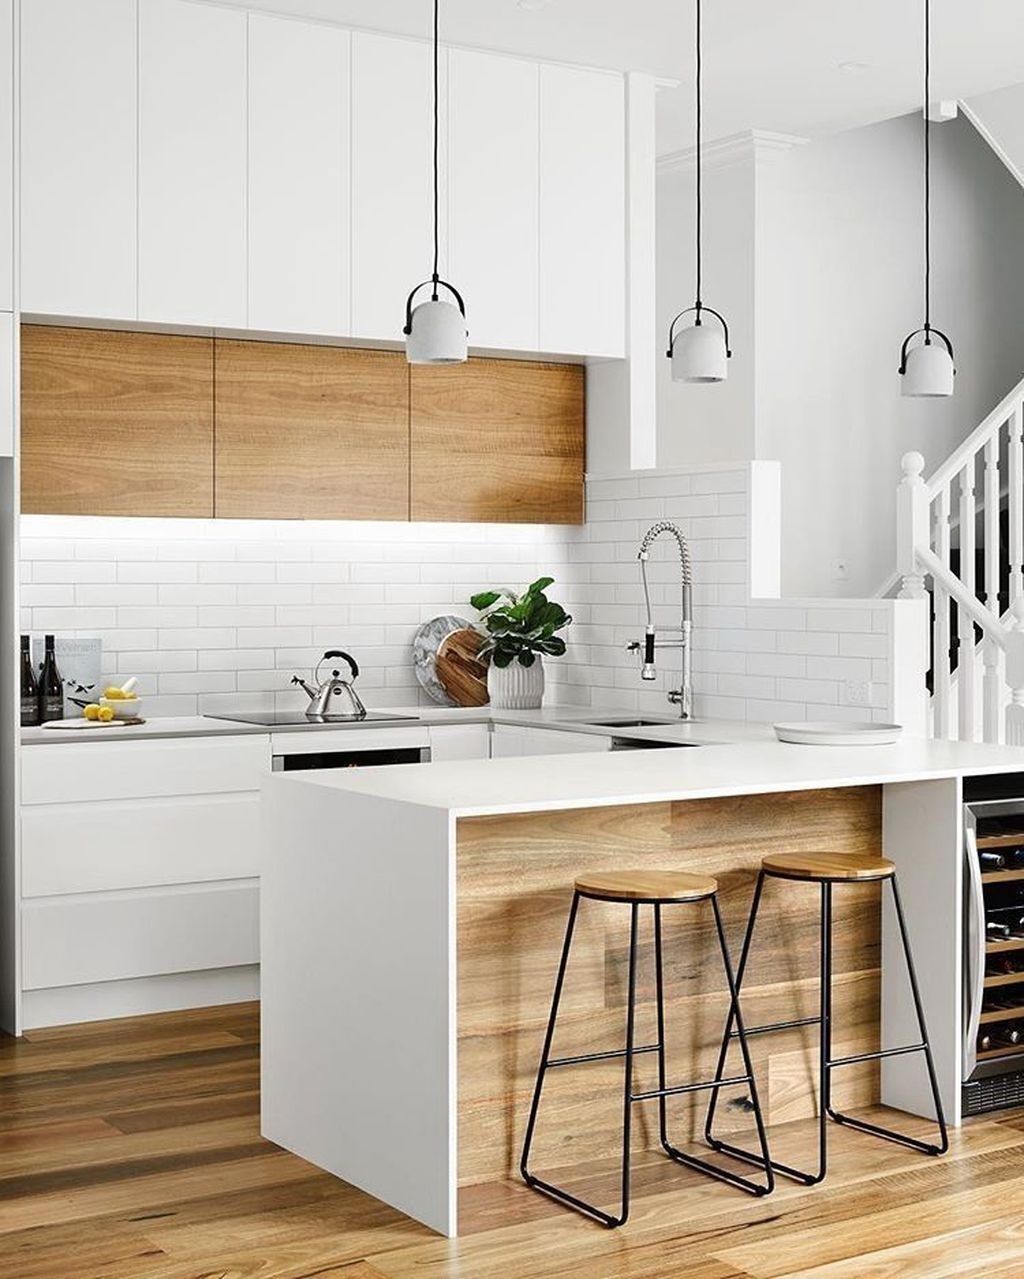 Elegant Modern Kitchen Decoration Ideas That Trend For 2019 23